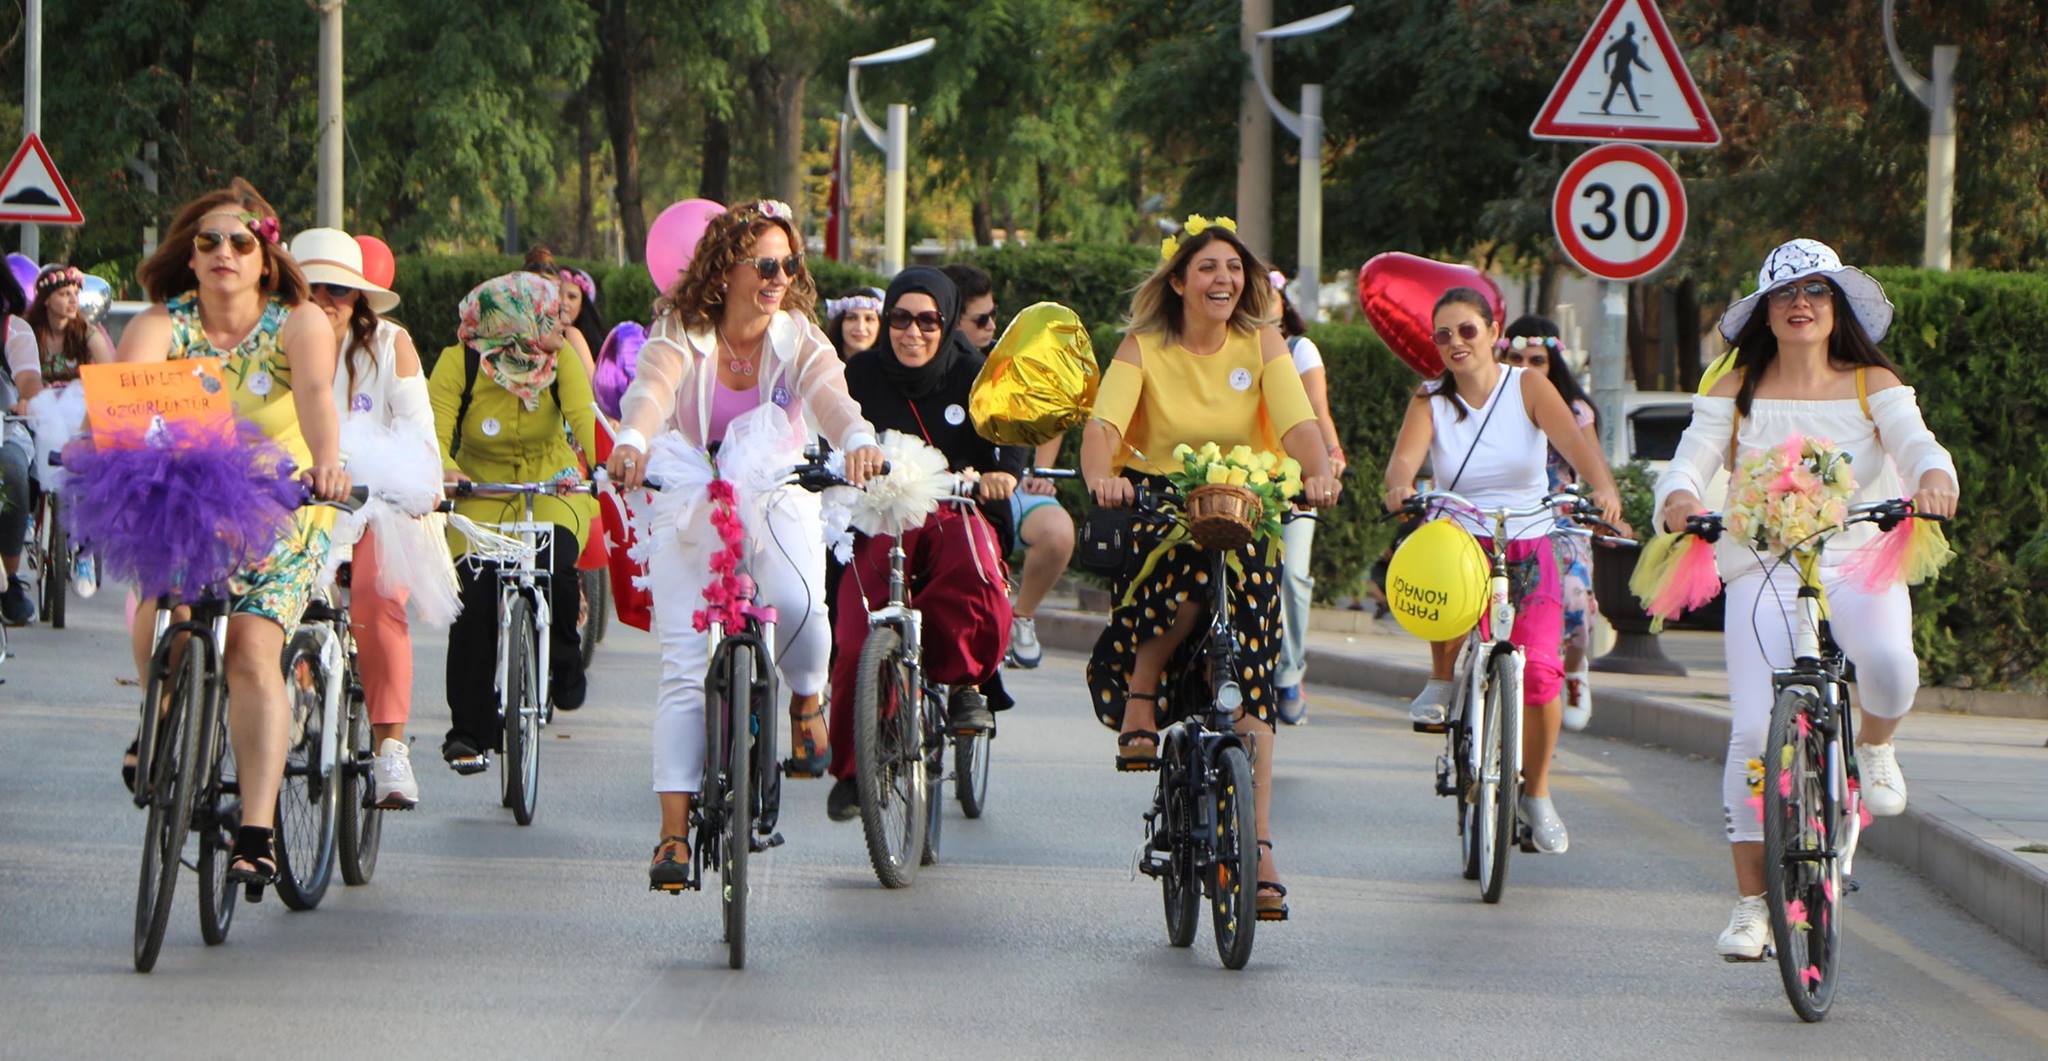 Süslü Kadınlar Bisiklet Turunda - Kırıkkale Haber, Son Dakika Kırıkkale Haberleri